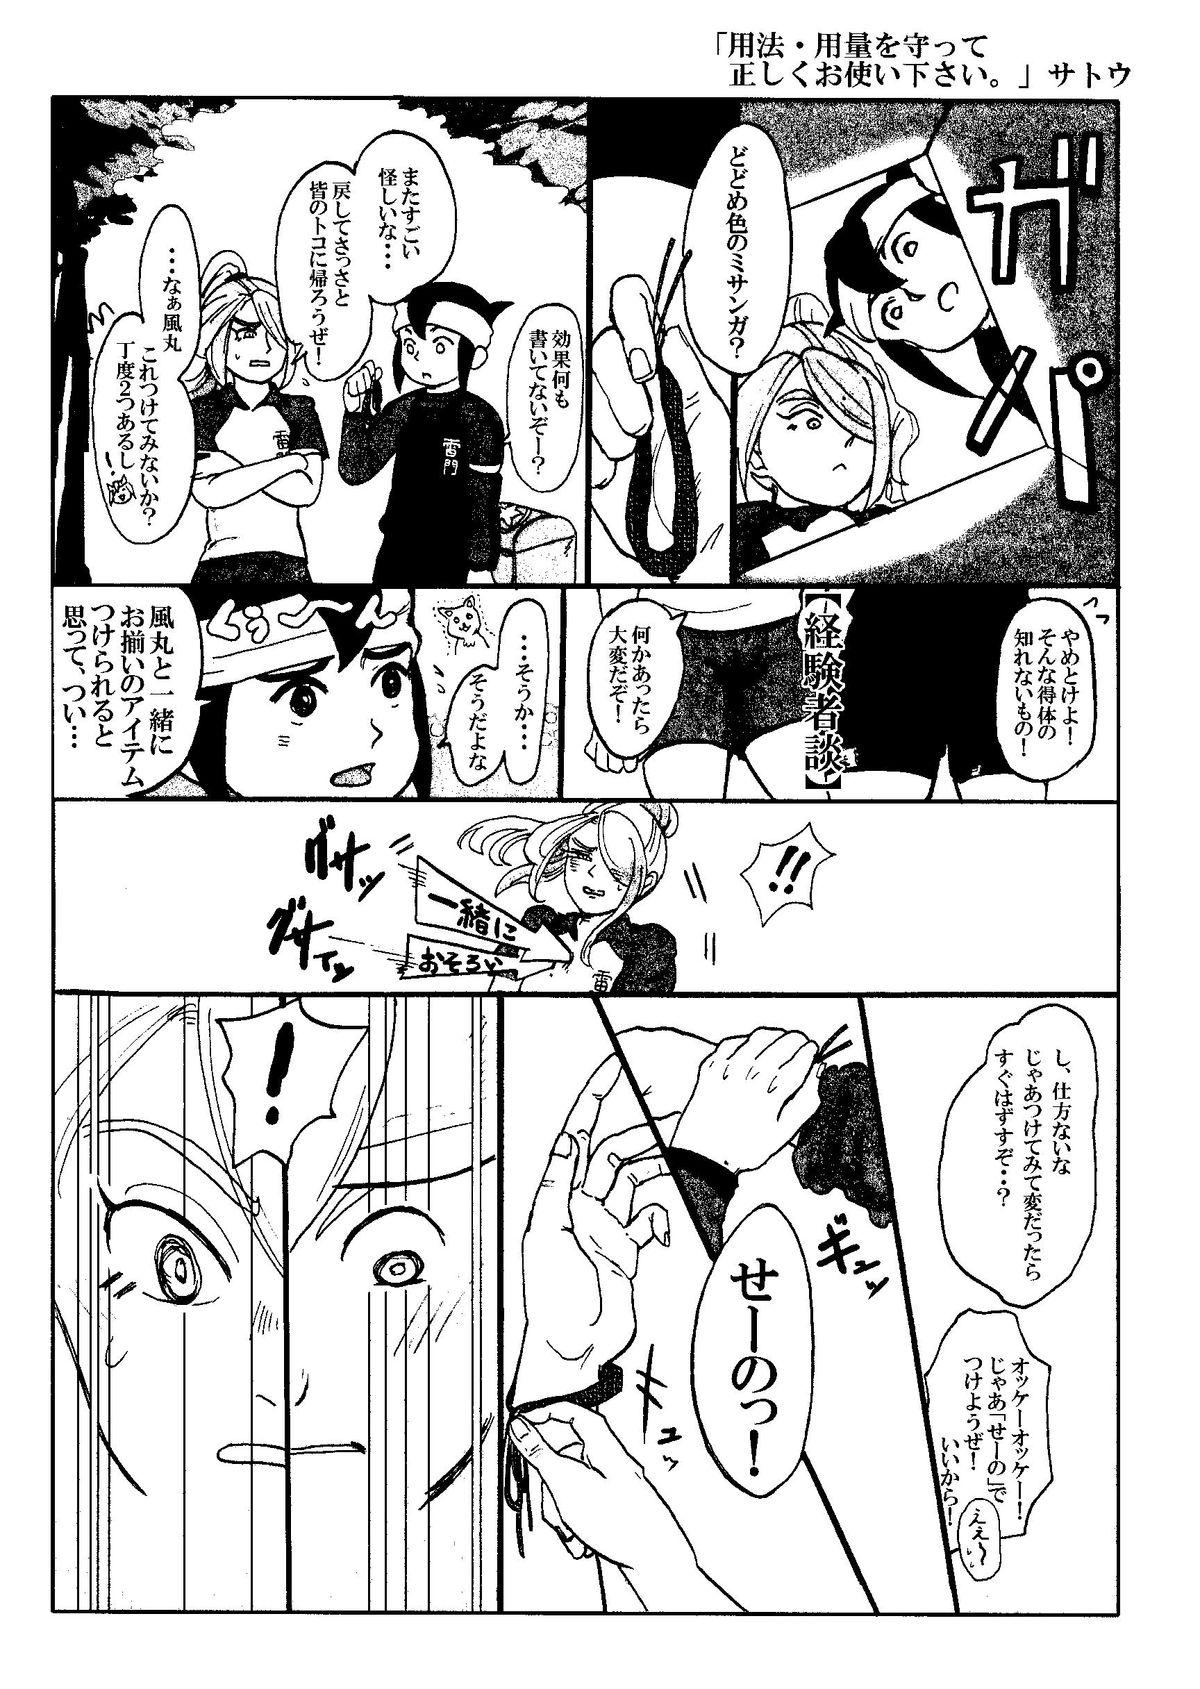 Curves Kirigakure Takaya (Aniki Otokodou) - ×××× Yarouze! (Inazuma Eleven) - Inazuma eleven Cream - Page 9